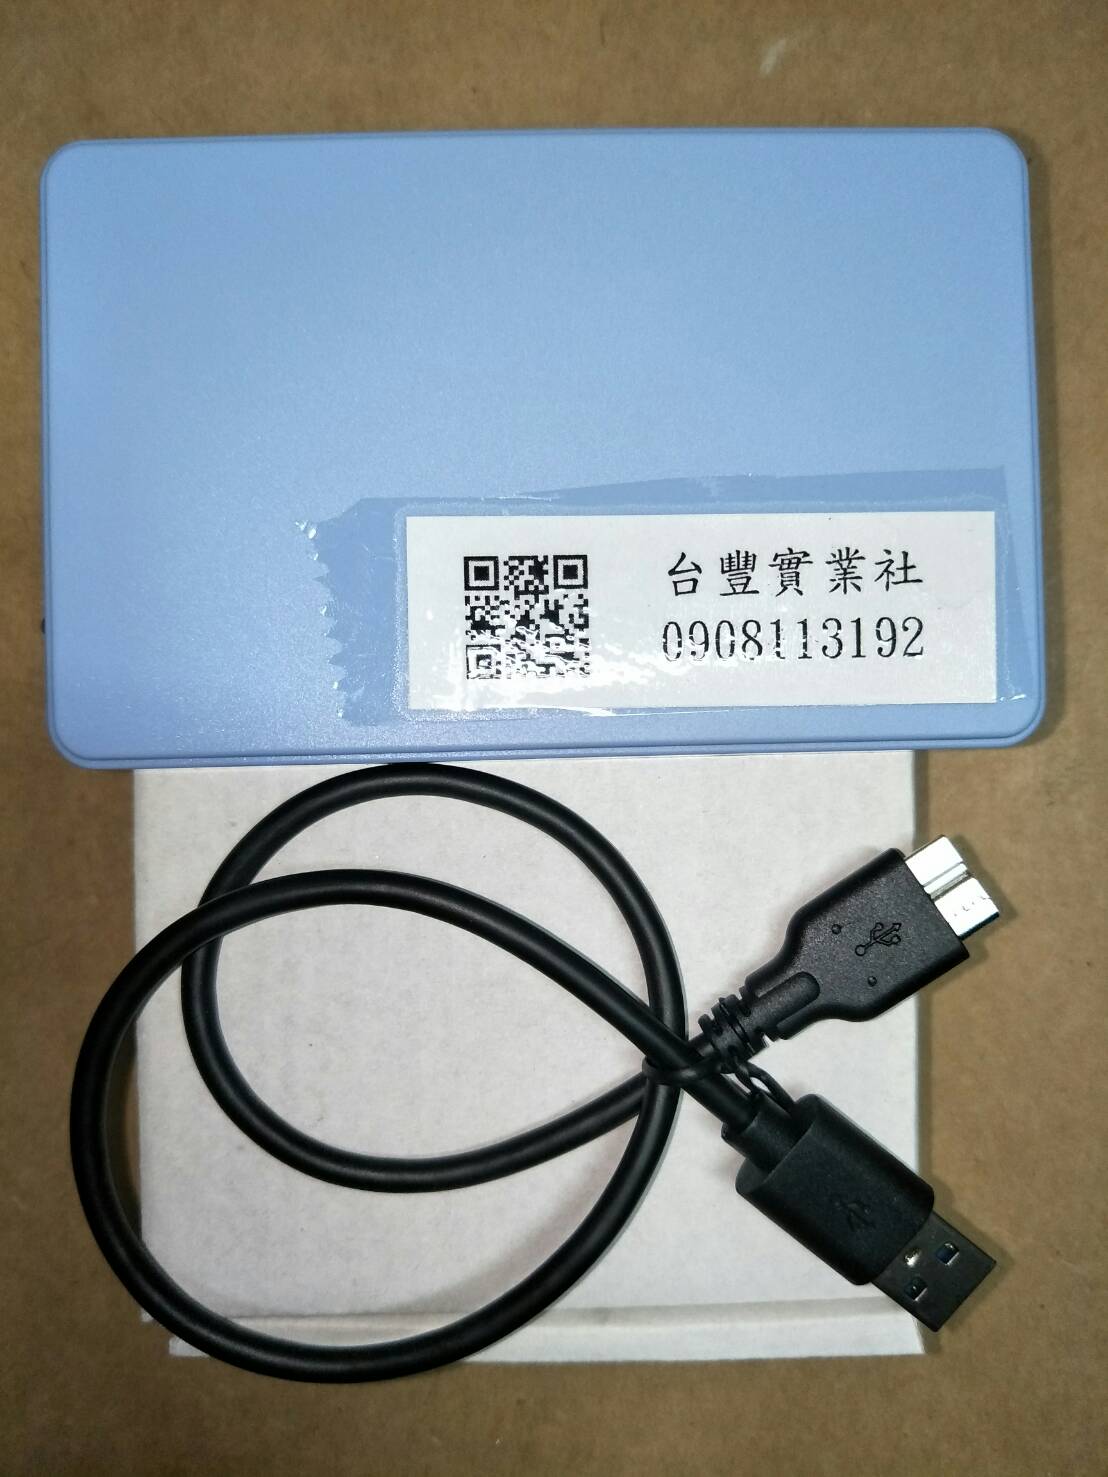 代售二手_SSD 500GB 2.5吋 外接式硬碟/USB3.0隨身碟硬碟